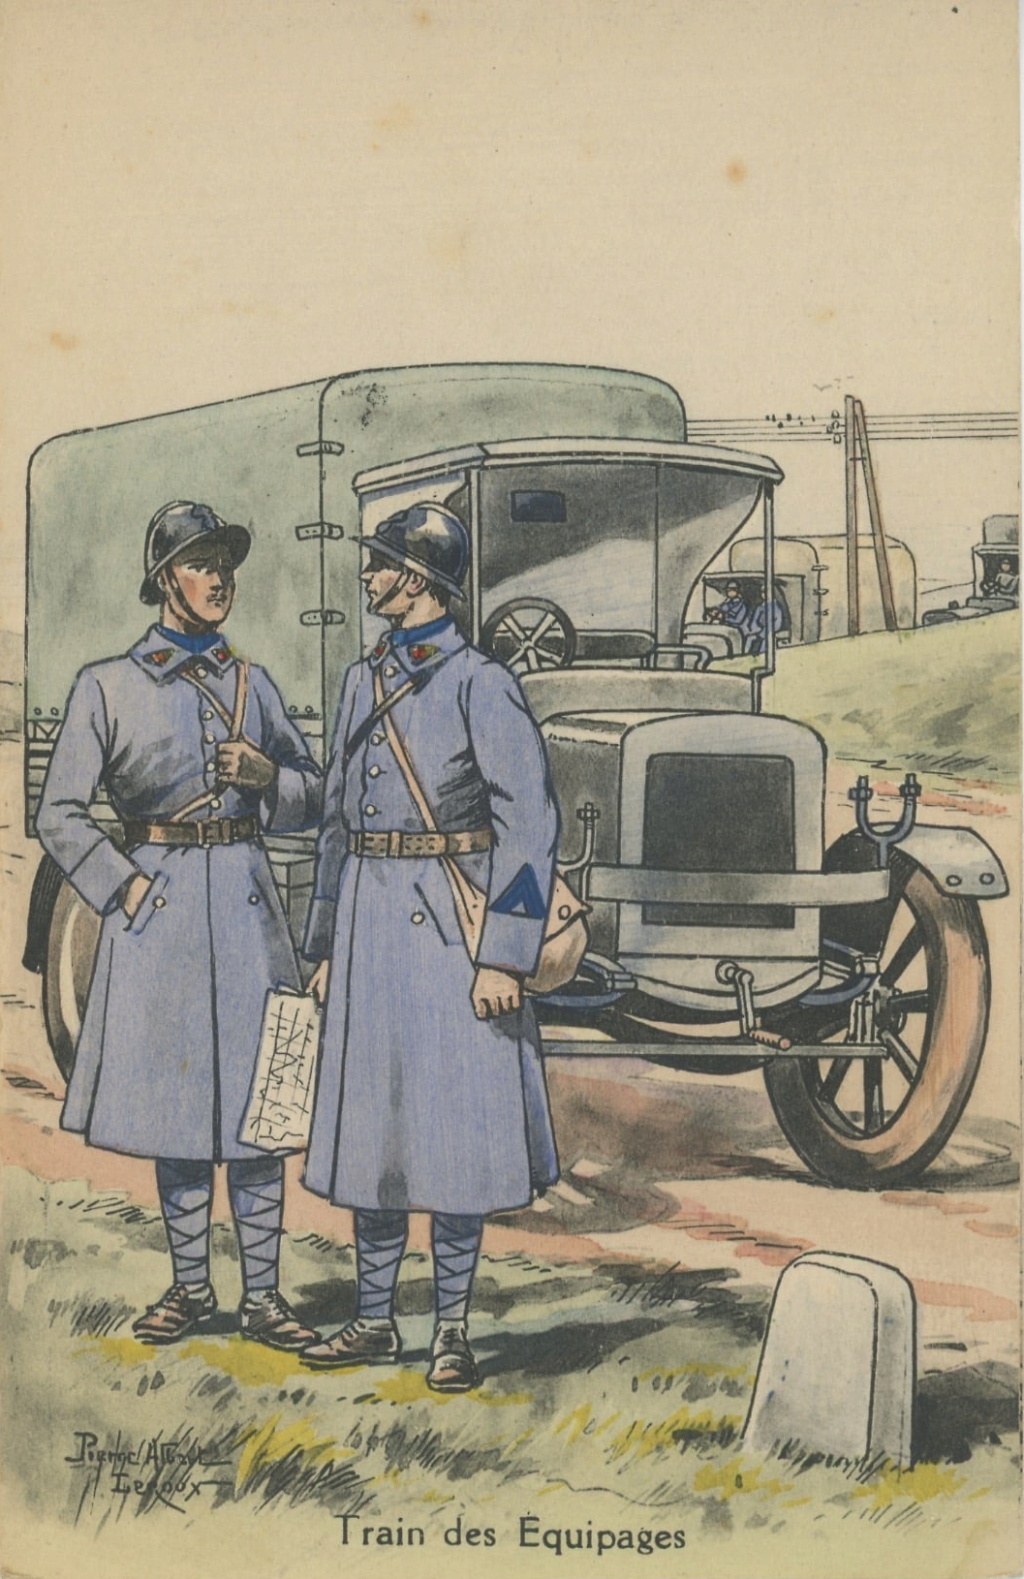 Planches uniformes Armée Française.... - Page 2 Train_12